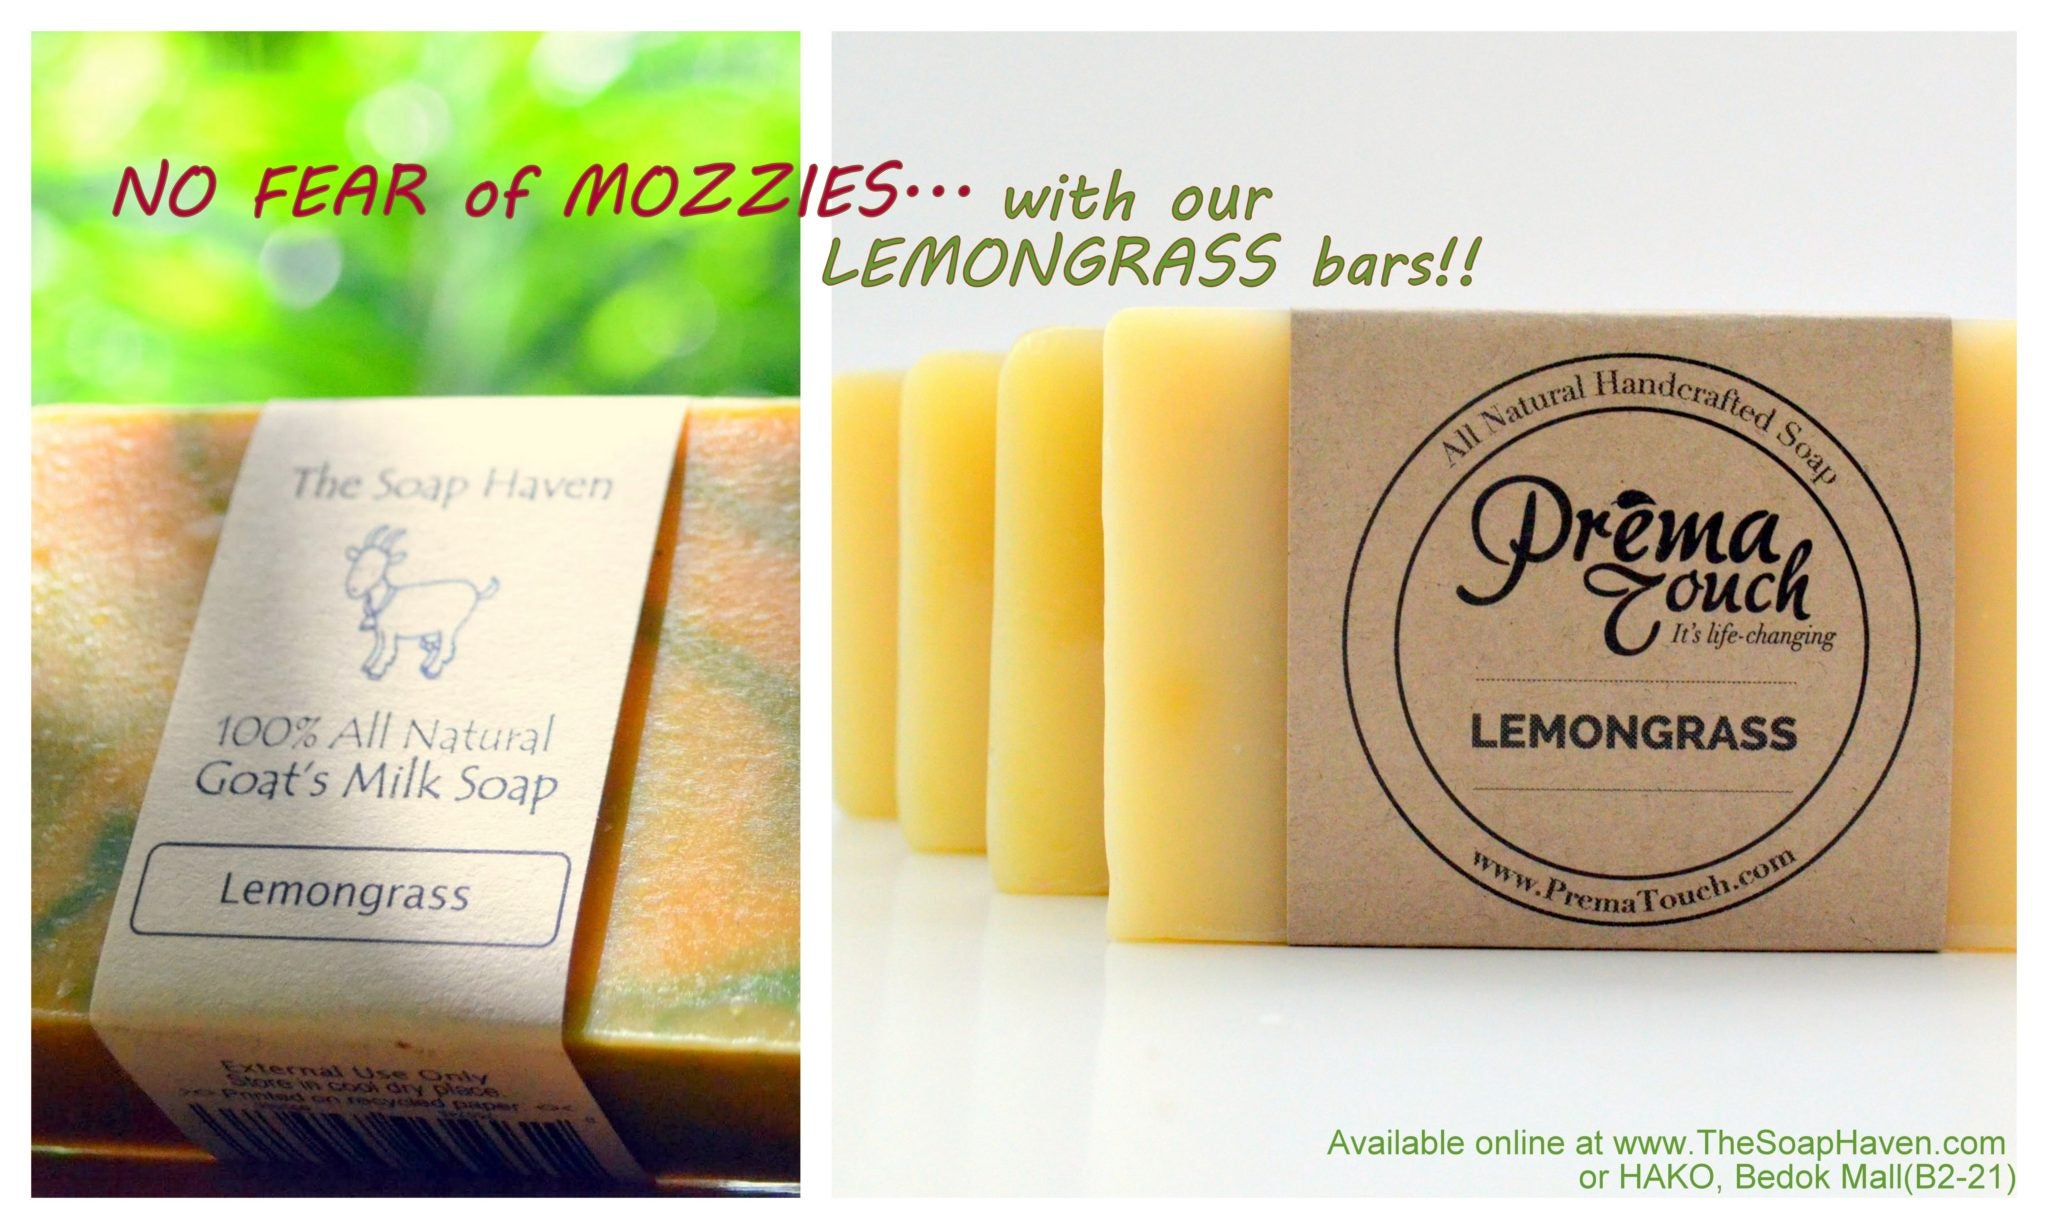 Mozzies-No fear- Lemongrass bars